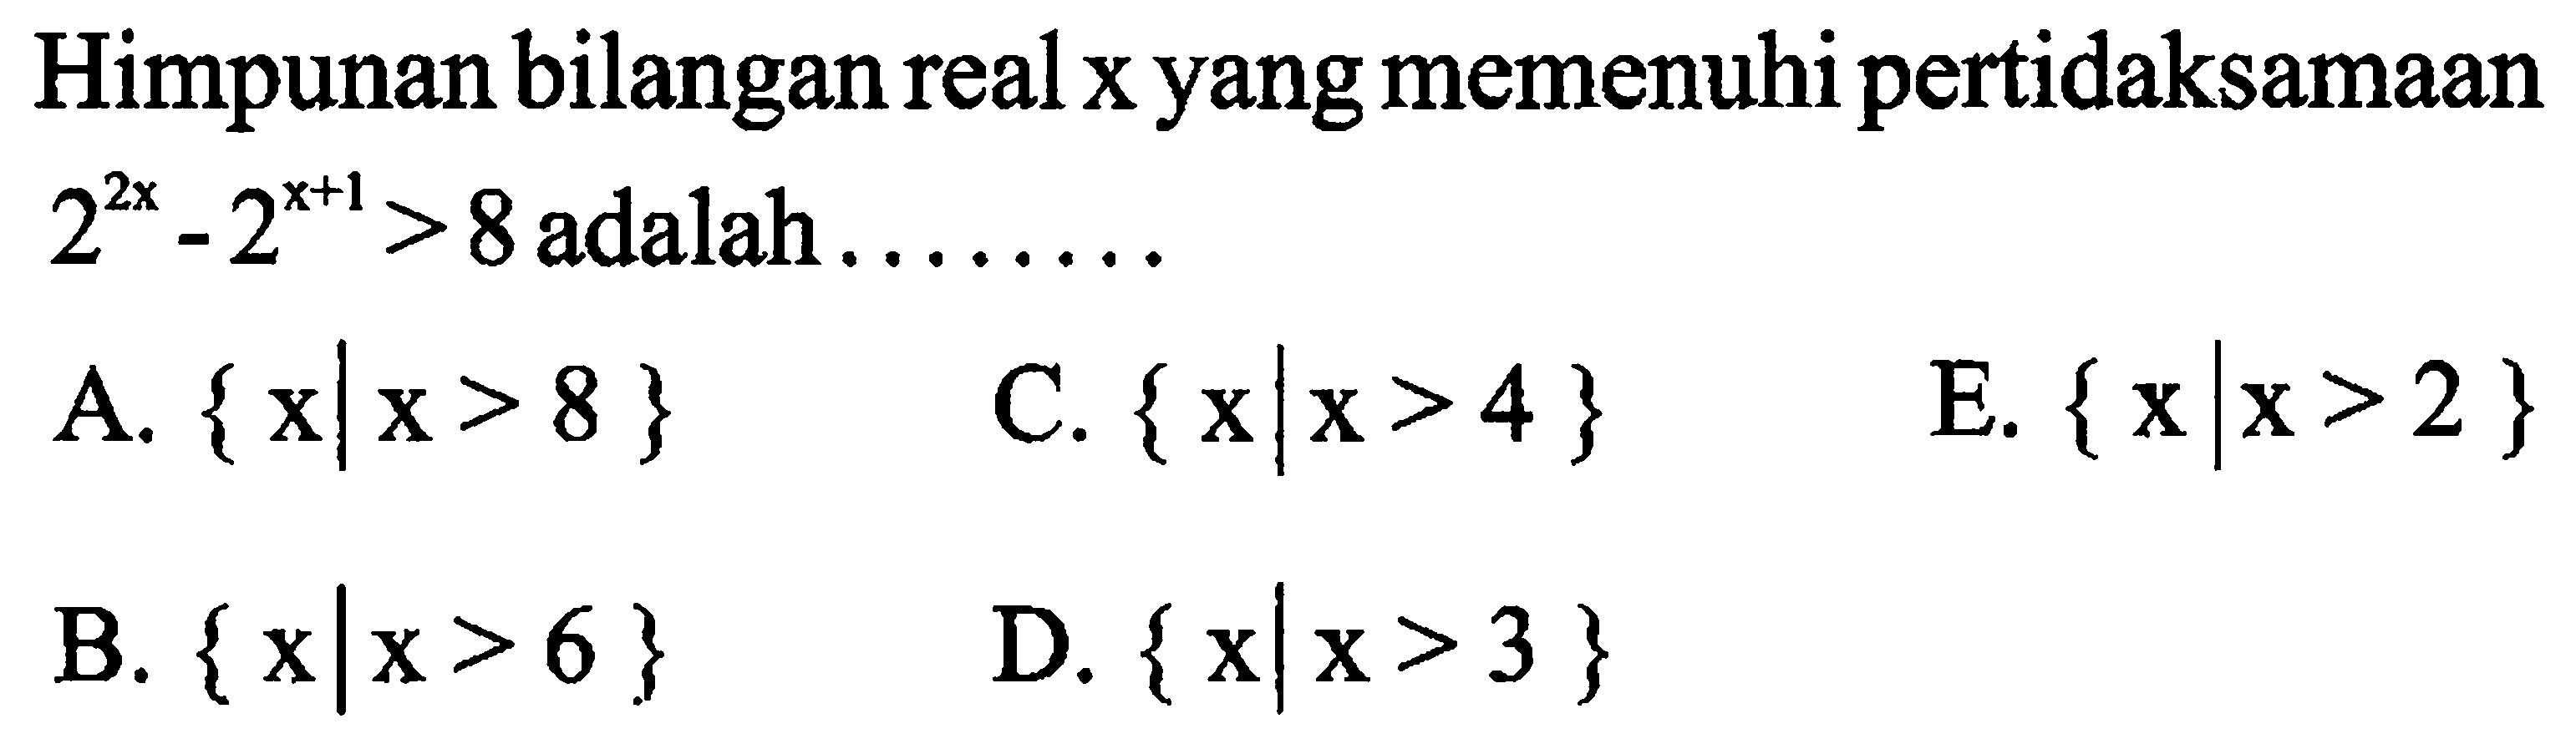 Himpunan bilangan real x yang memenuhi pertidaksamaan 2^(2x) - 2^(x+1) > 8 adalah